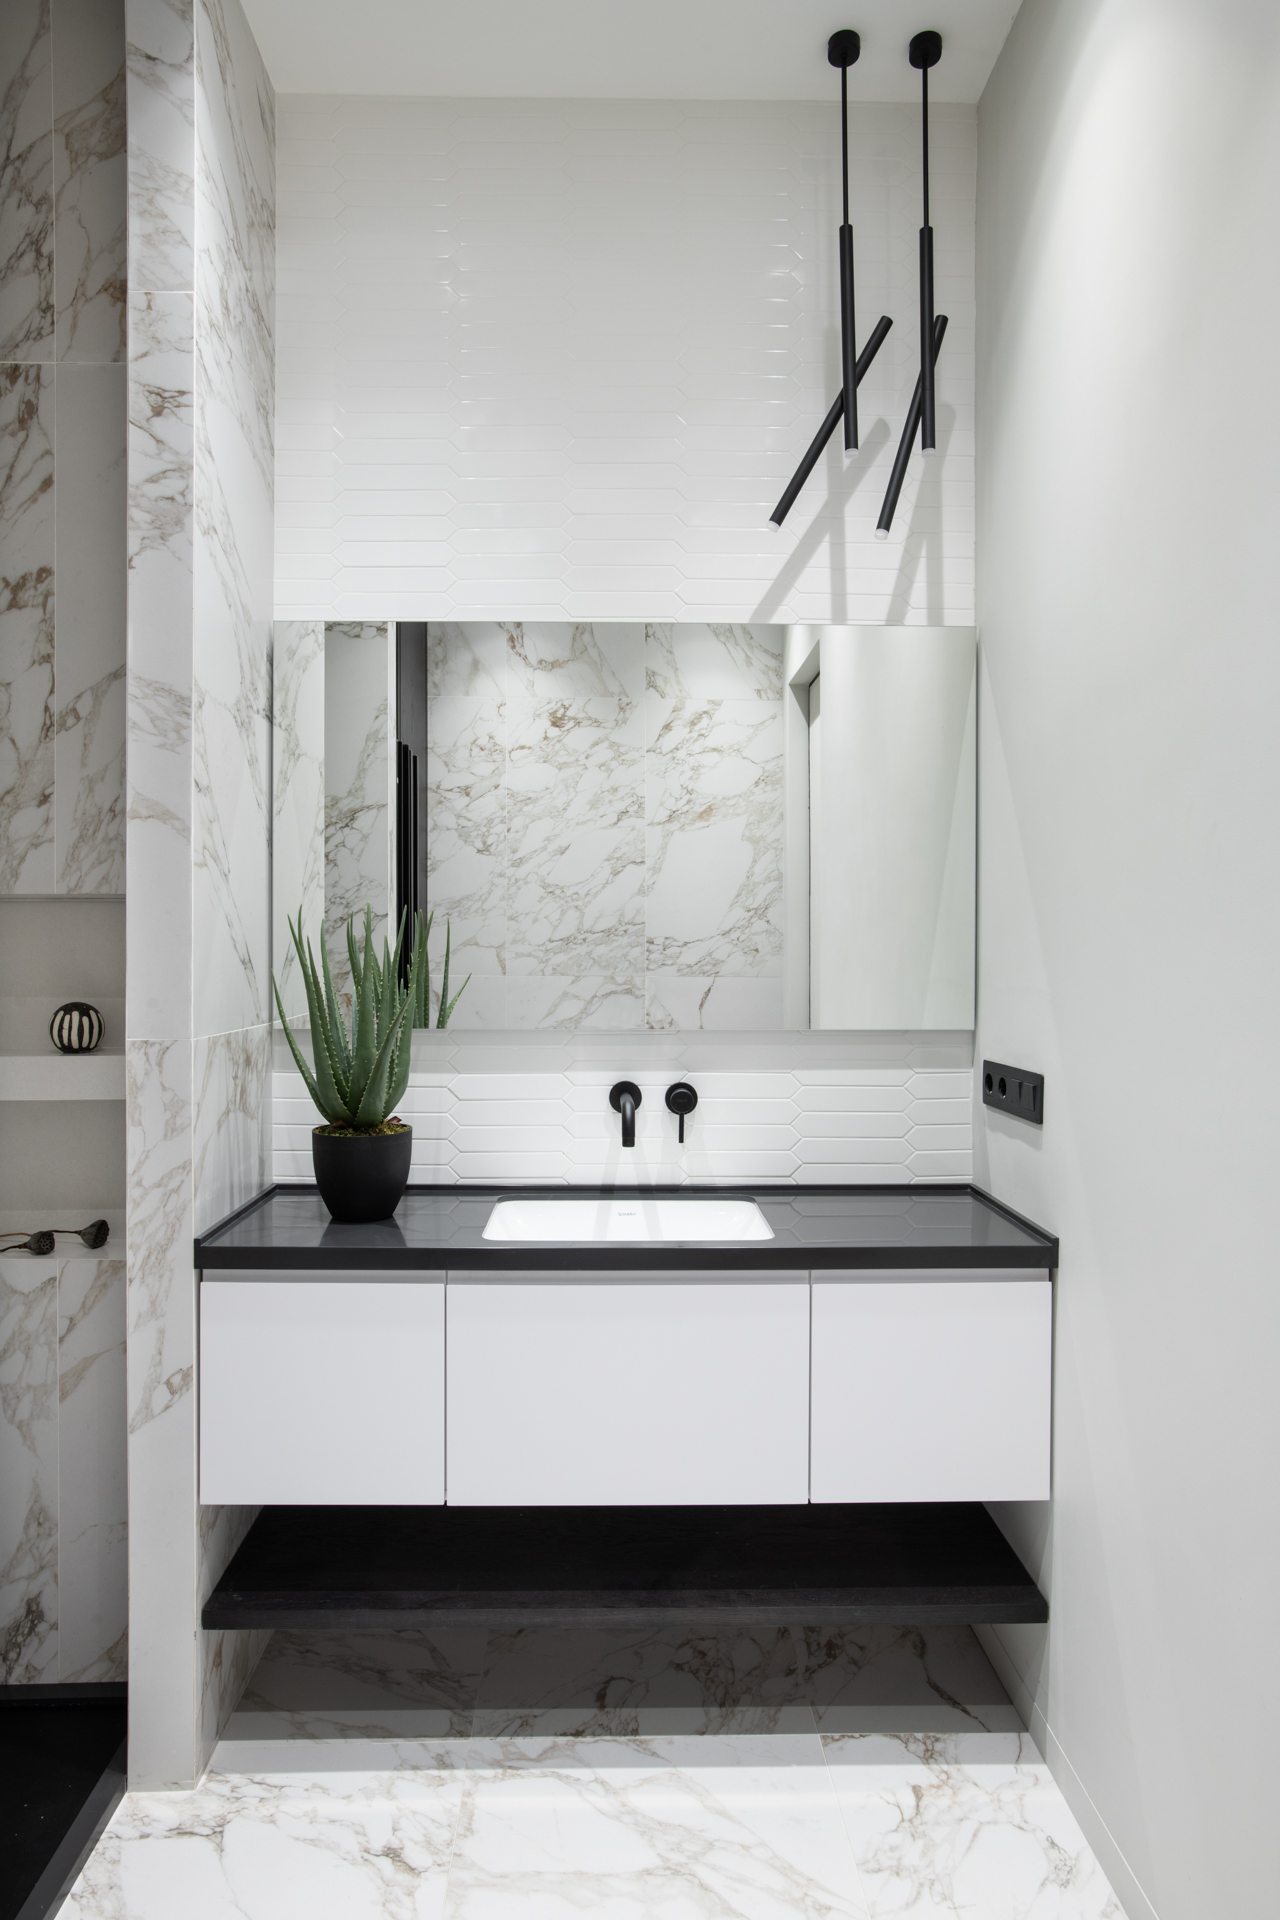 Phòng tắm và nhà vệ sinh sáng sủa với sơn tường màu trắng cùng đá cẩm thạch ốp lát sang chảnh. Một chậu cây nha đam đặt trên bồn rửa vừa có tác dụng thanh lọc không khí vừa mang thiên nhiên vào không gian sống.